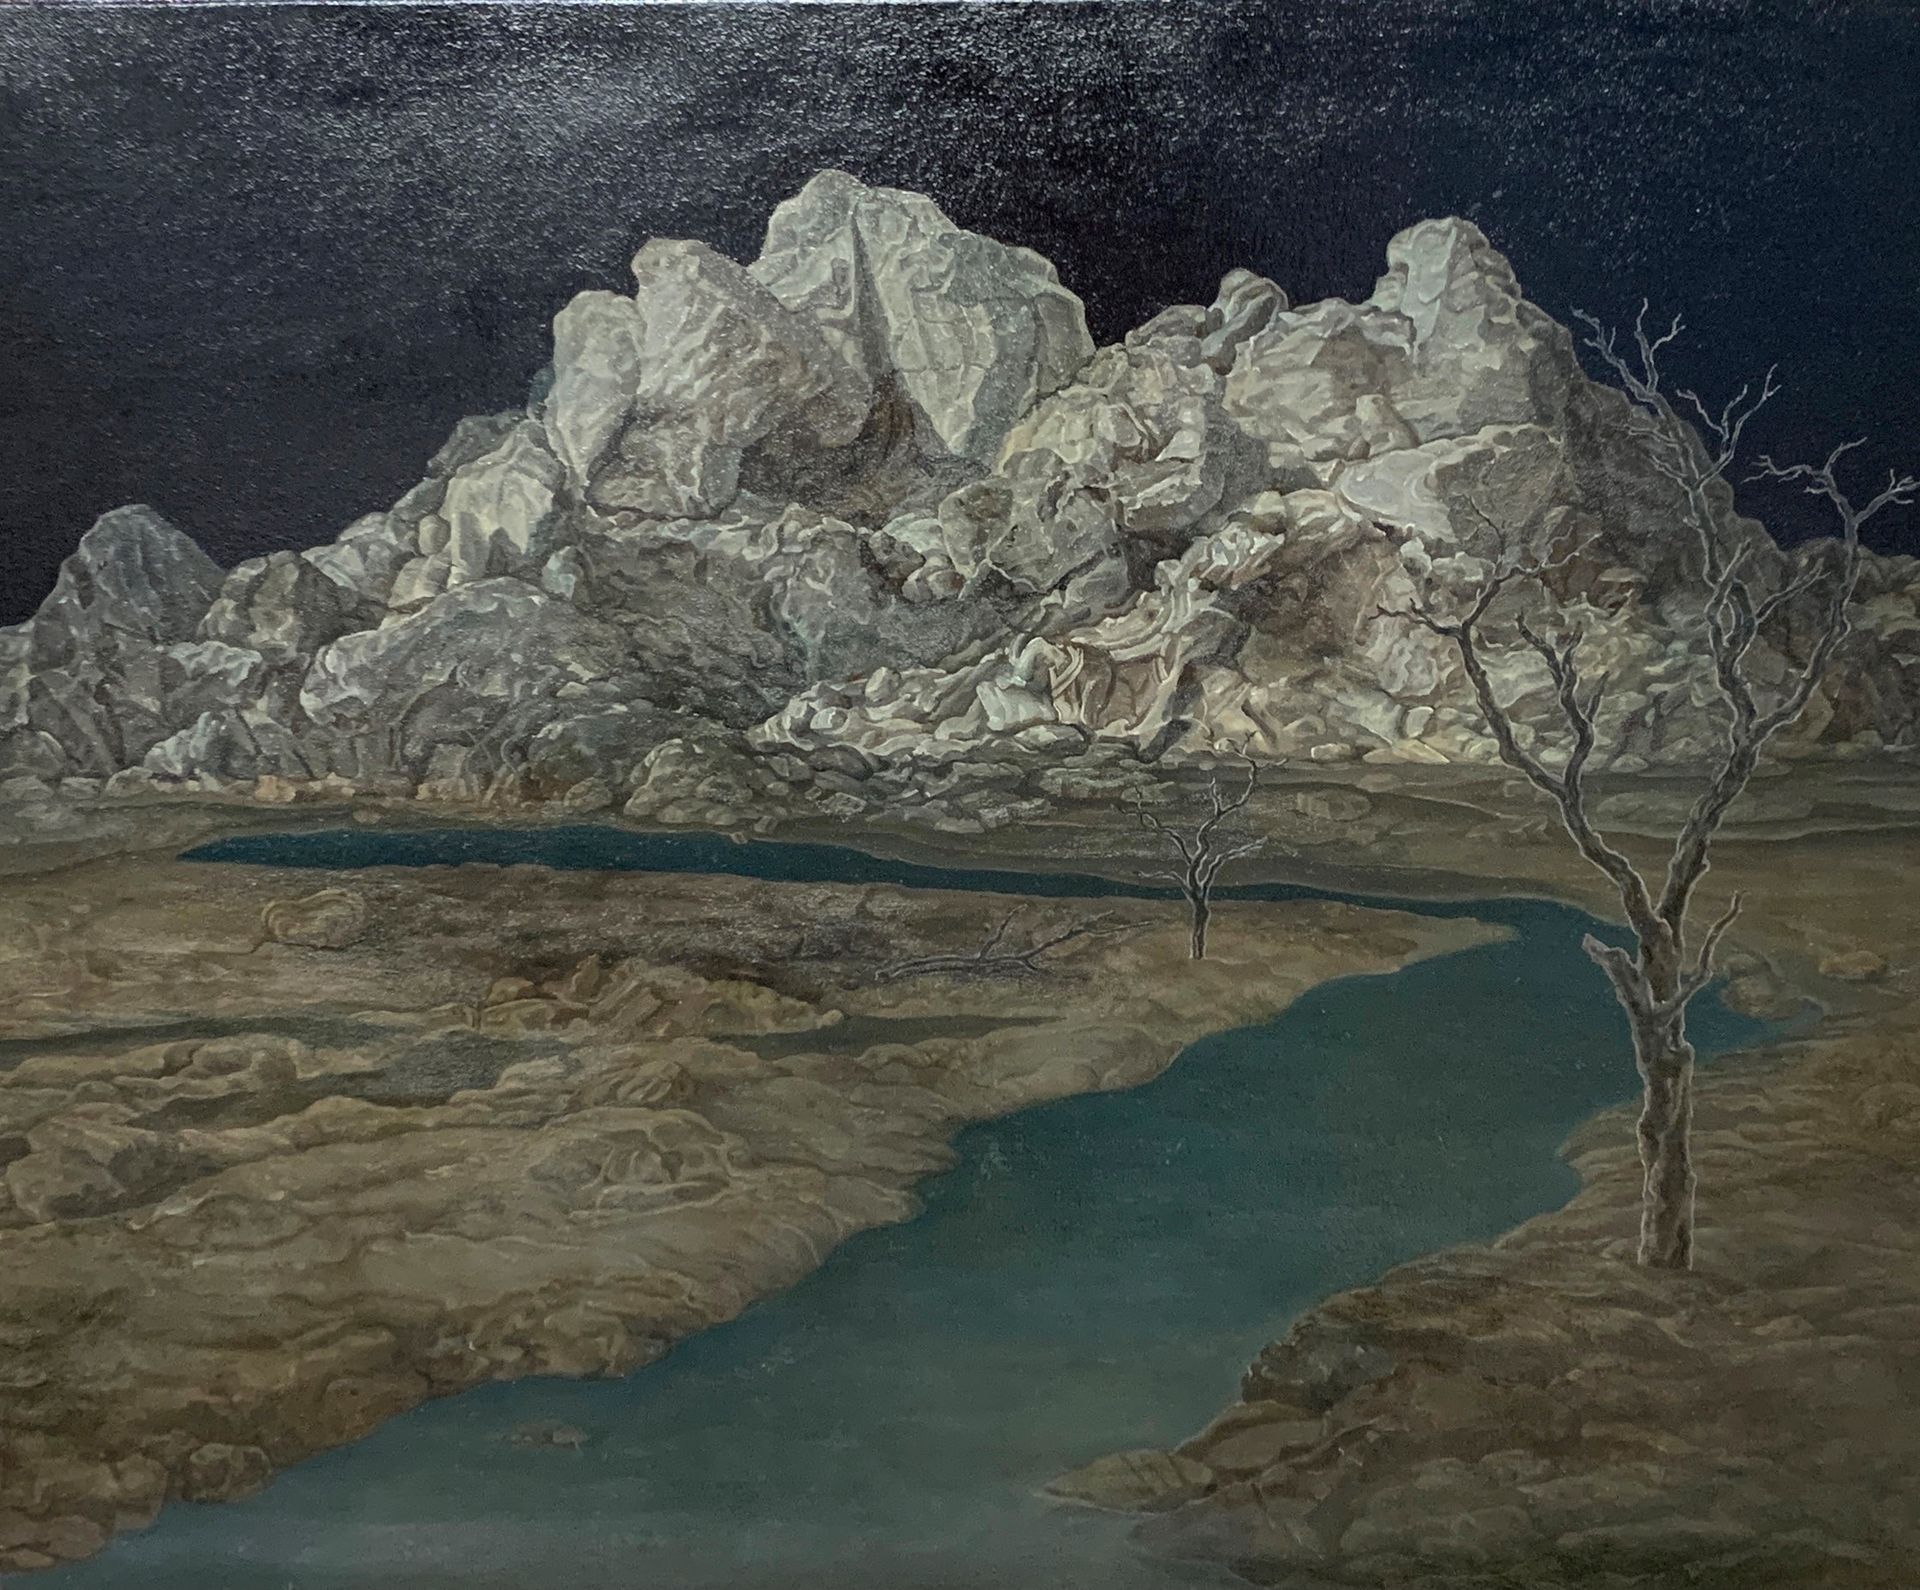 LI DONGLU (1982) Montagna e fiume, 2016
Olio su tela
Dimensioni: 38 x 46 cm